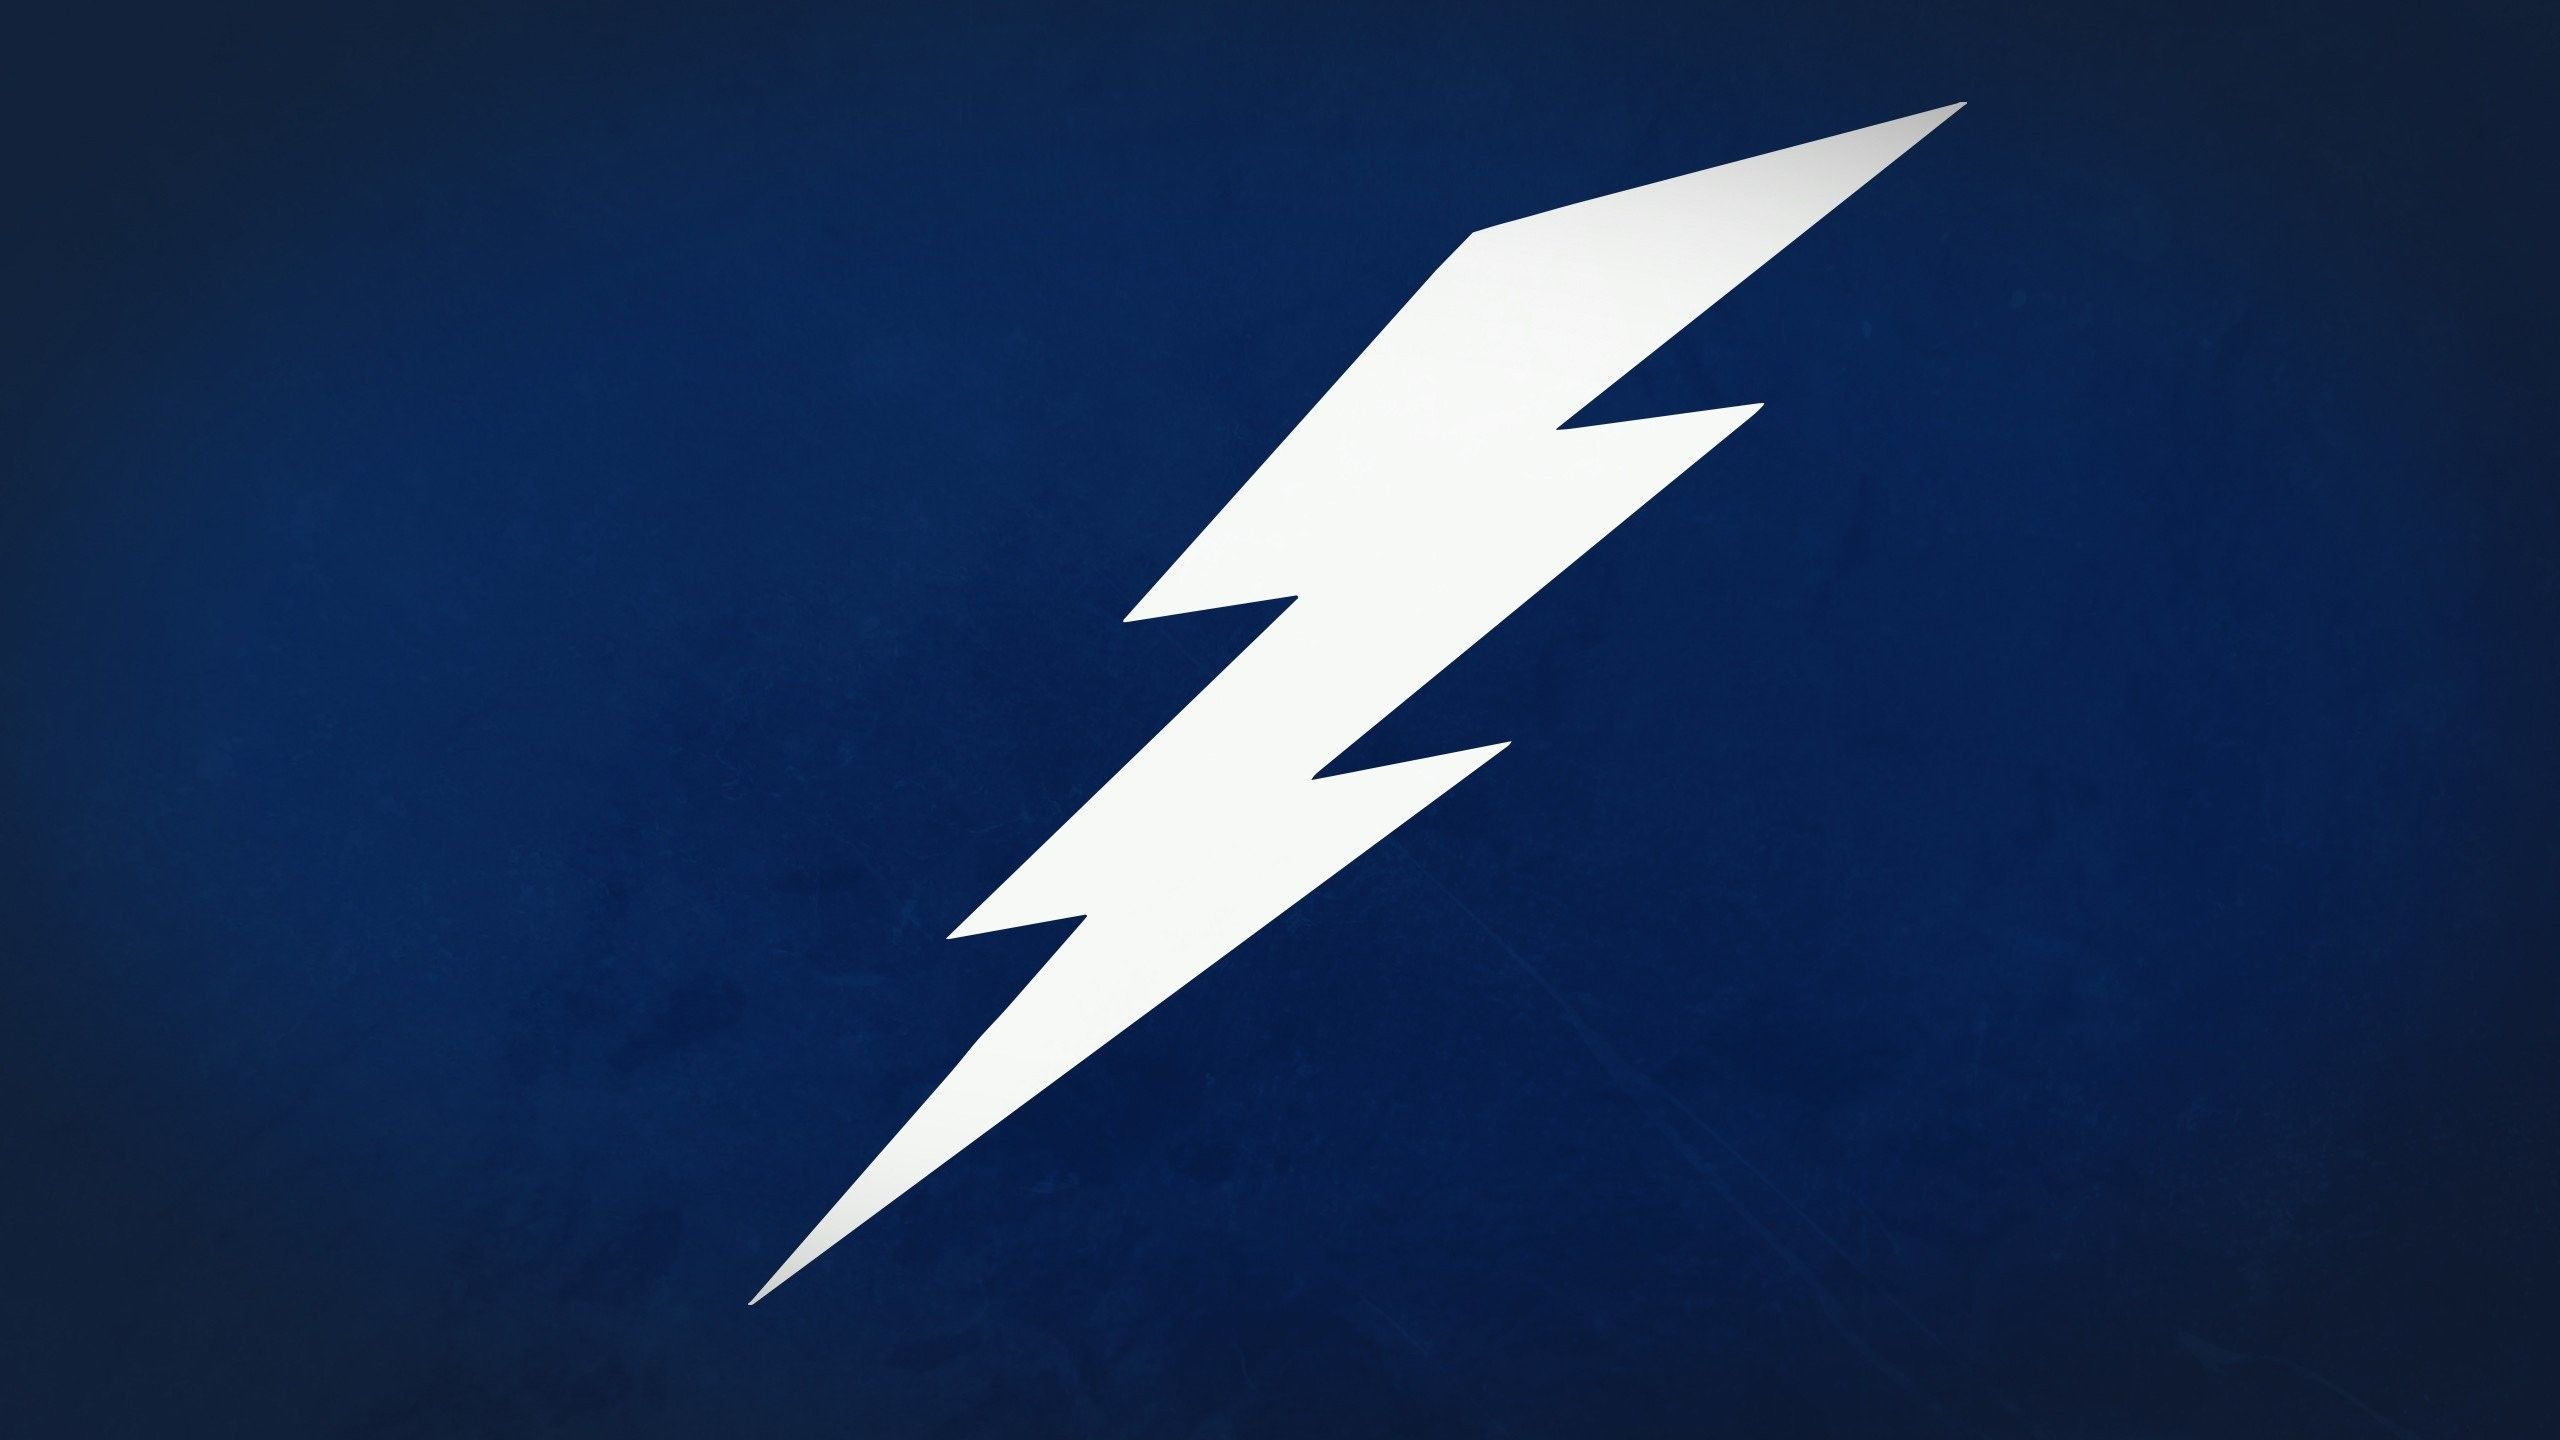 Lightning Bolt Backgrounds 41 Pictures